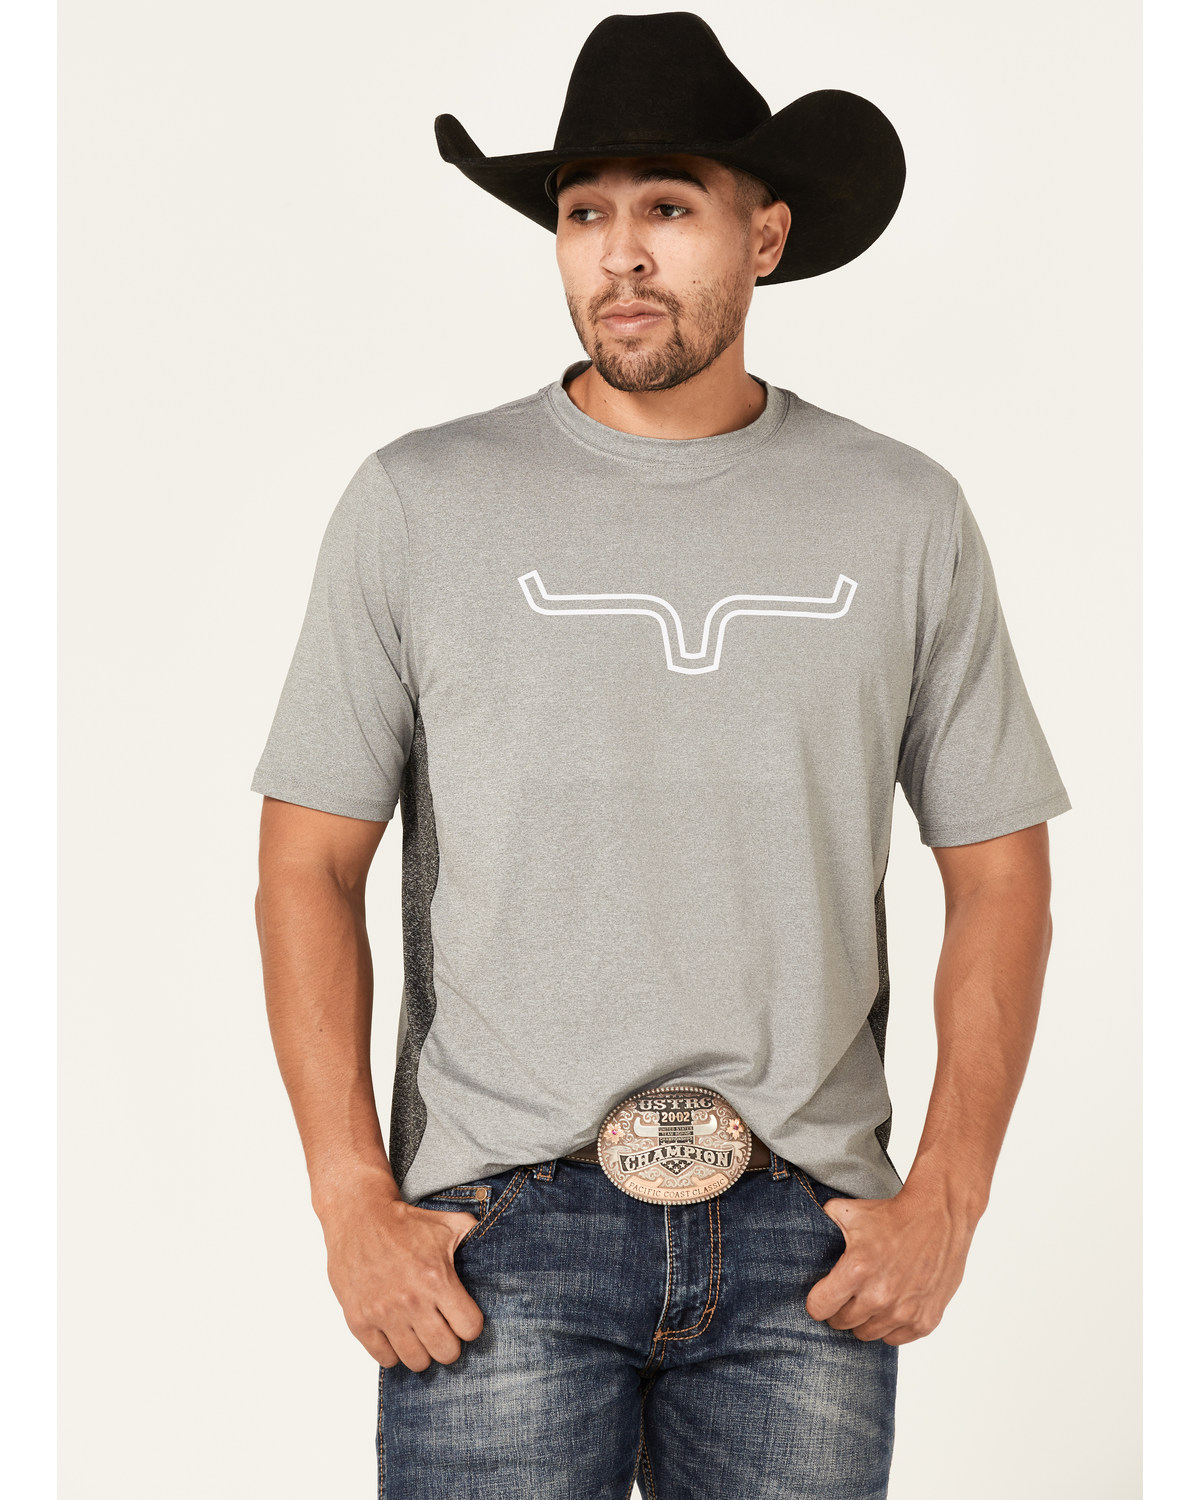 Kimes Ranch Men's Phase 2 Tech T-Shirt